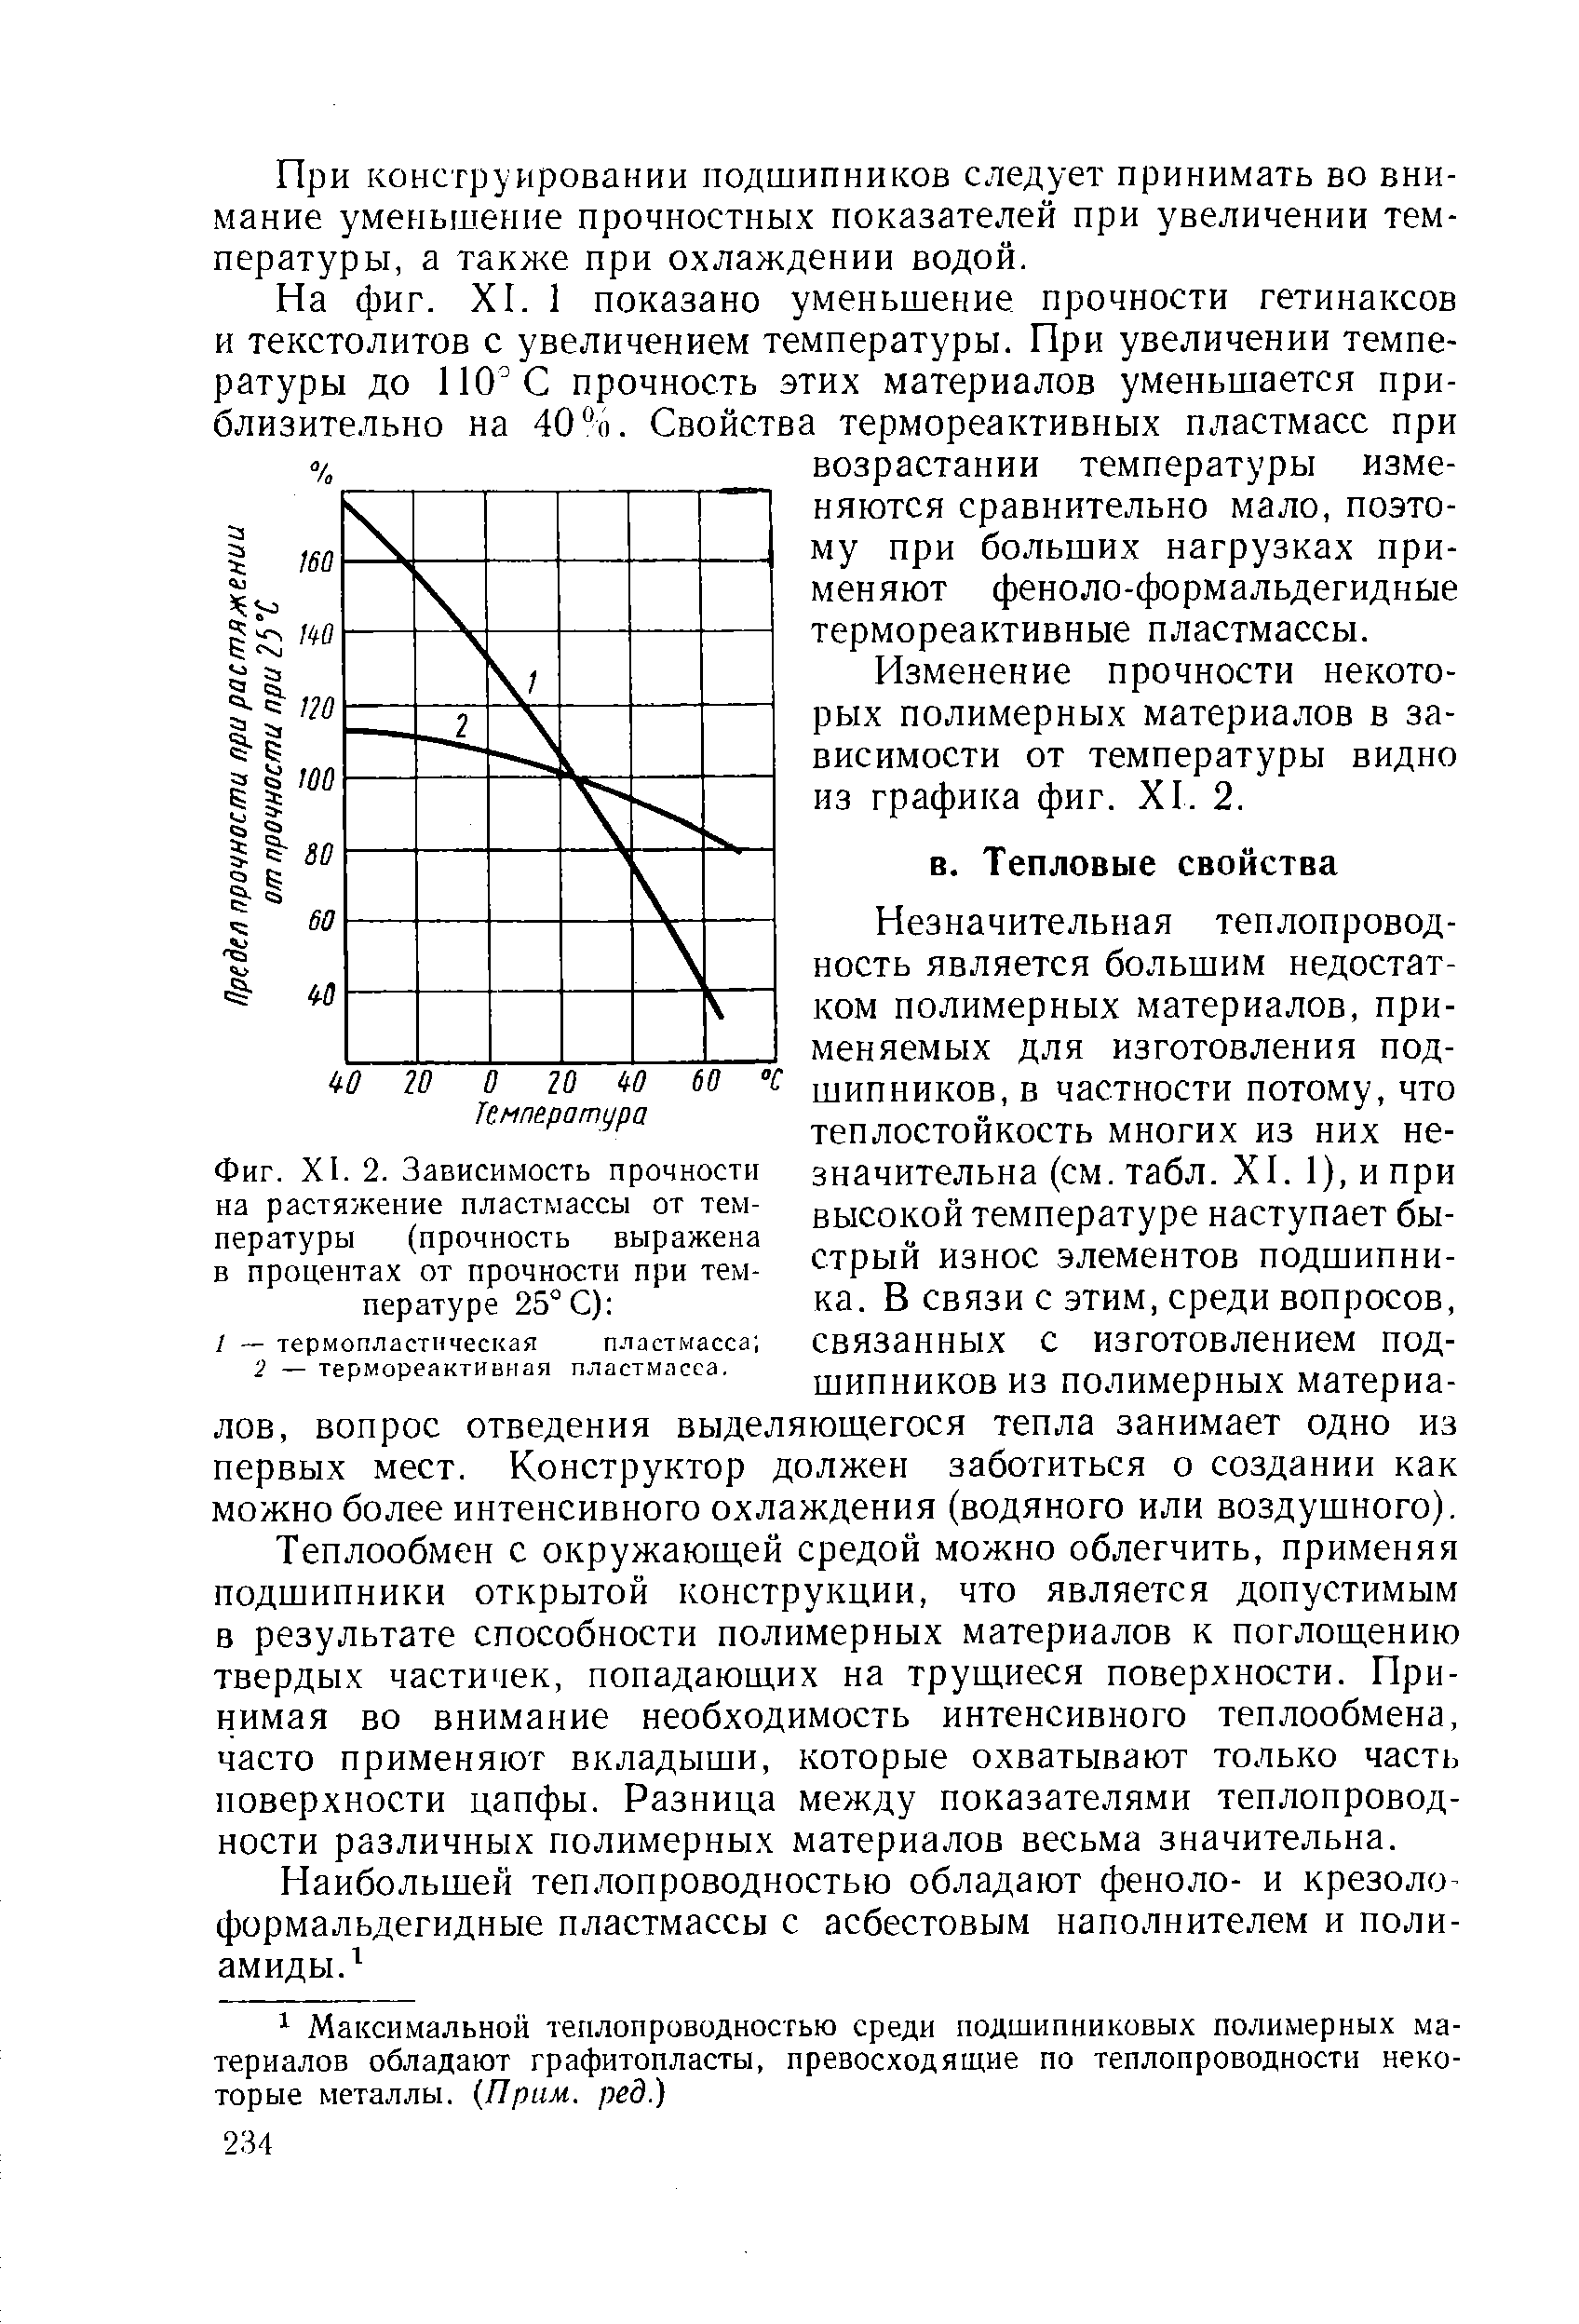 Фиг. XI. 2. Зависимость прочности на растяжение пластмассы от температуры (прочность выражена в процентах от прочности при температуре 25° С) 
